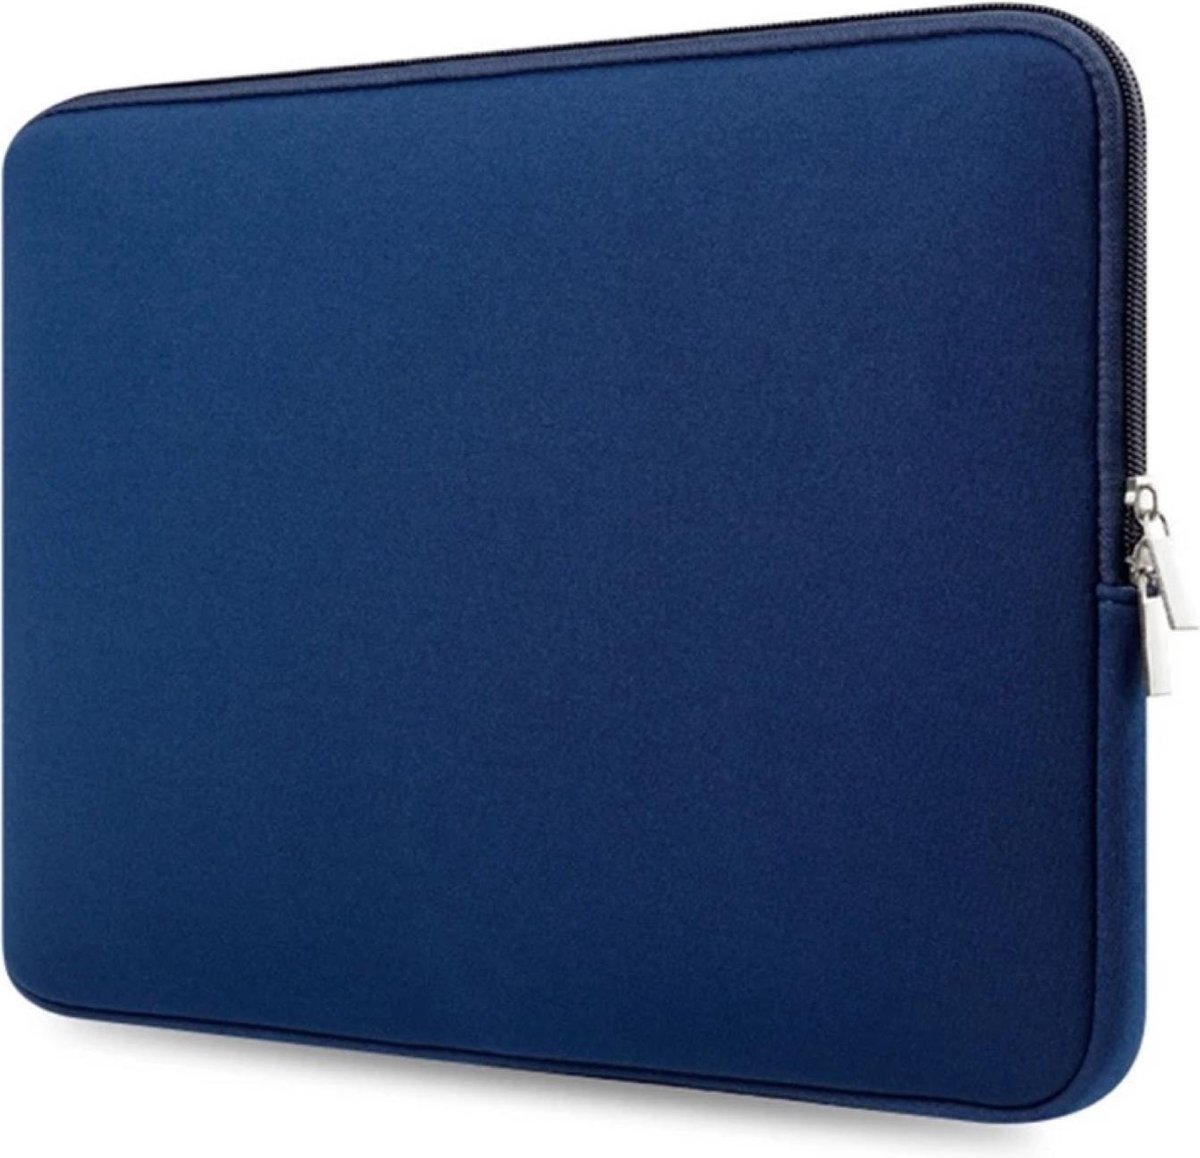 Laptop Sleeve voor Dell Inspiron - Met Ritssluiting - laptop hoes - sleeve - spatwaterbestendig - extra bescherming - 14,6 inch ( Blauw )